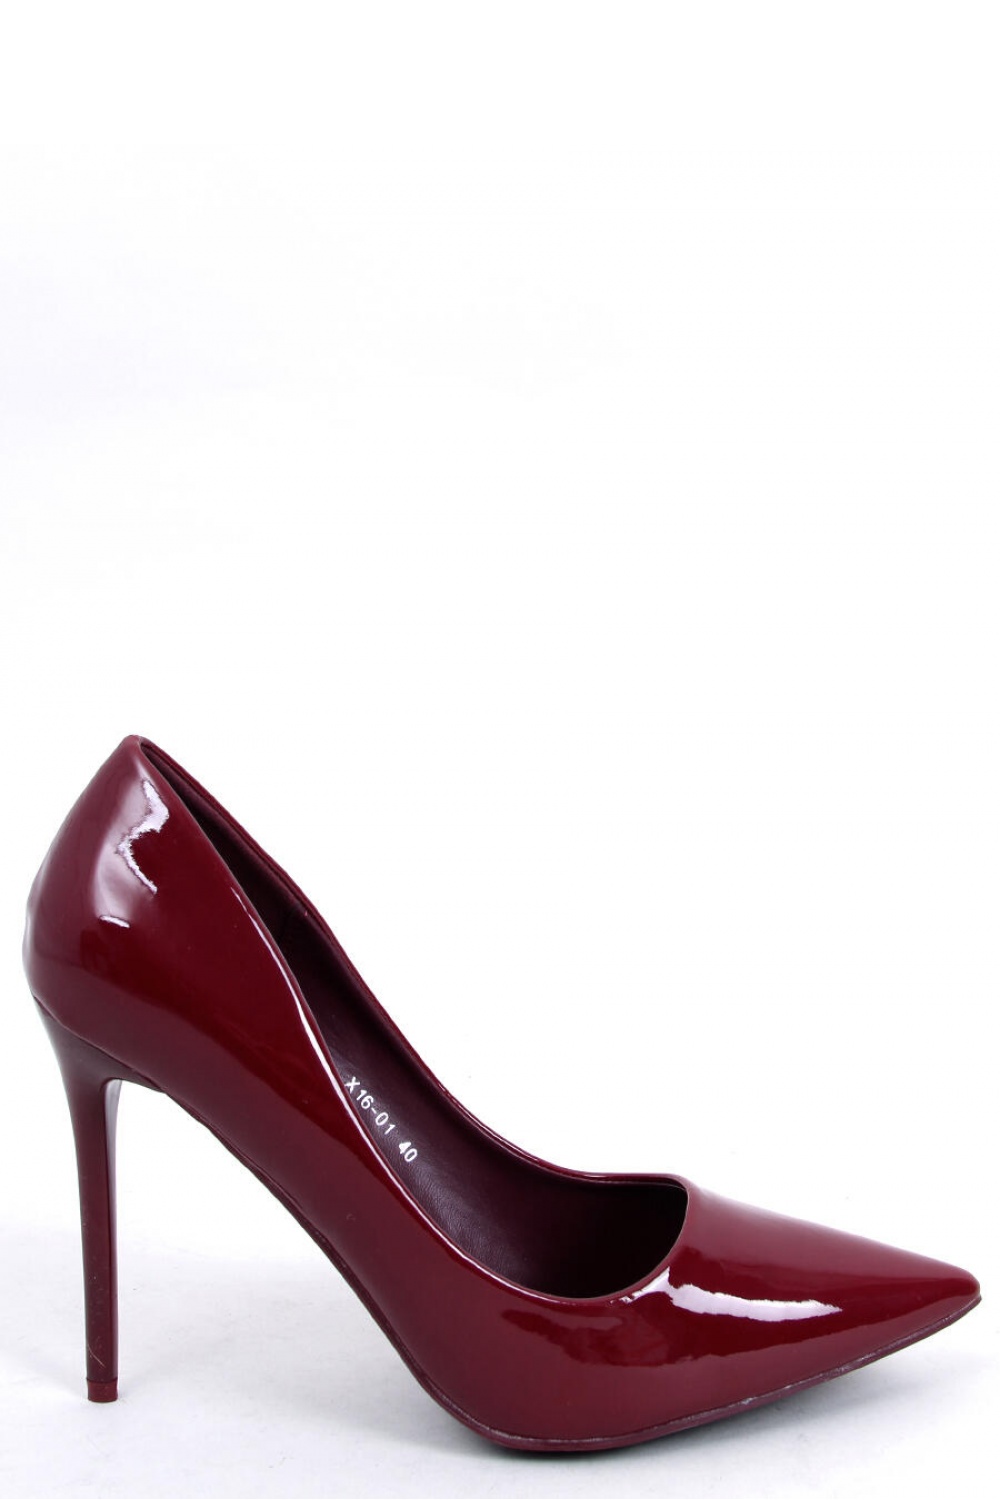 High heels model 174516 Inello